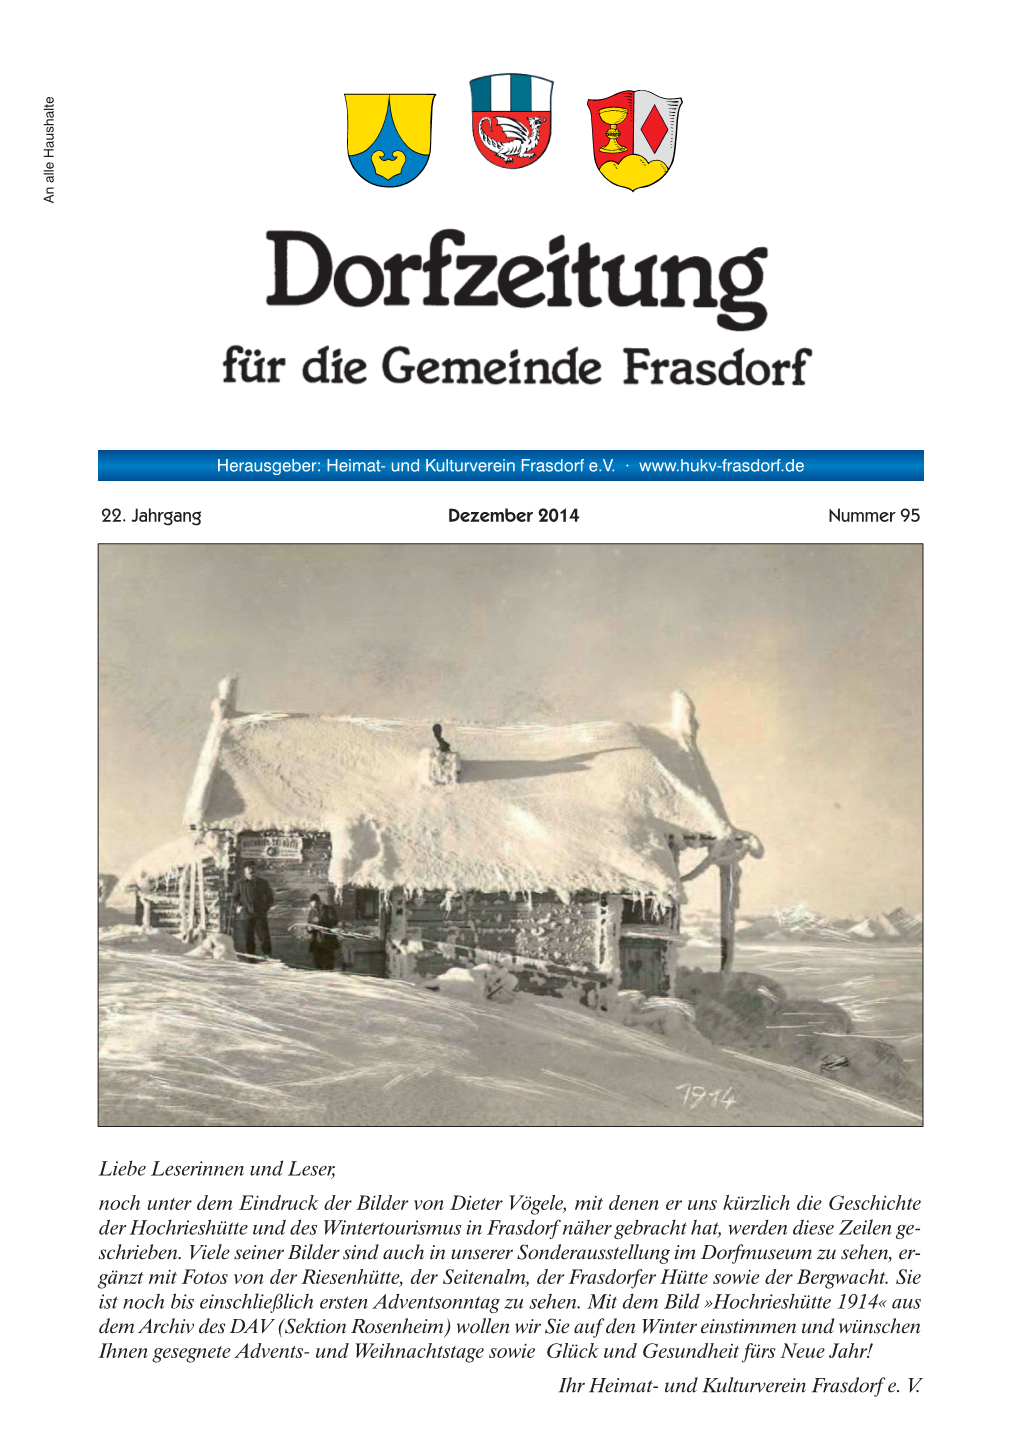 100 Jahre Hochrieshuette Teil 2 Dorfzeitung Frasdorf.Pdf